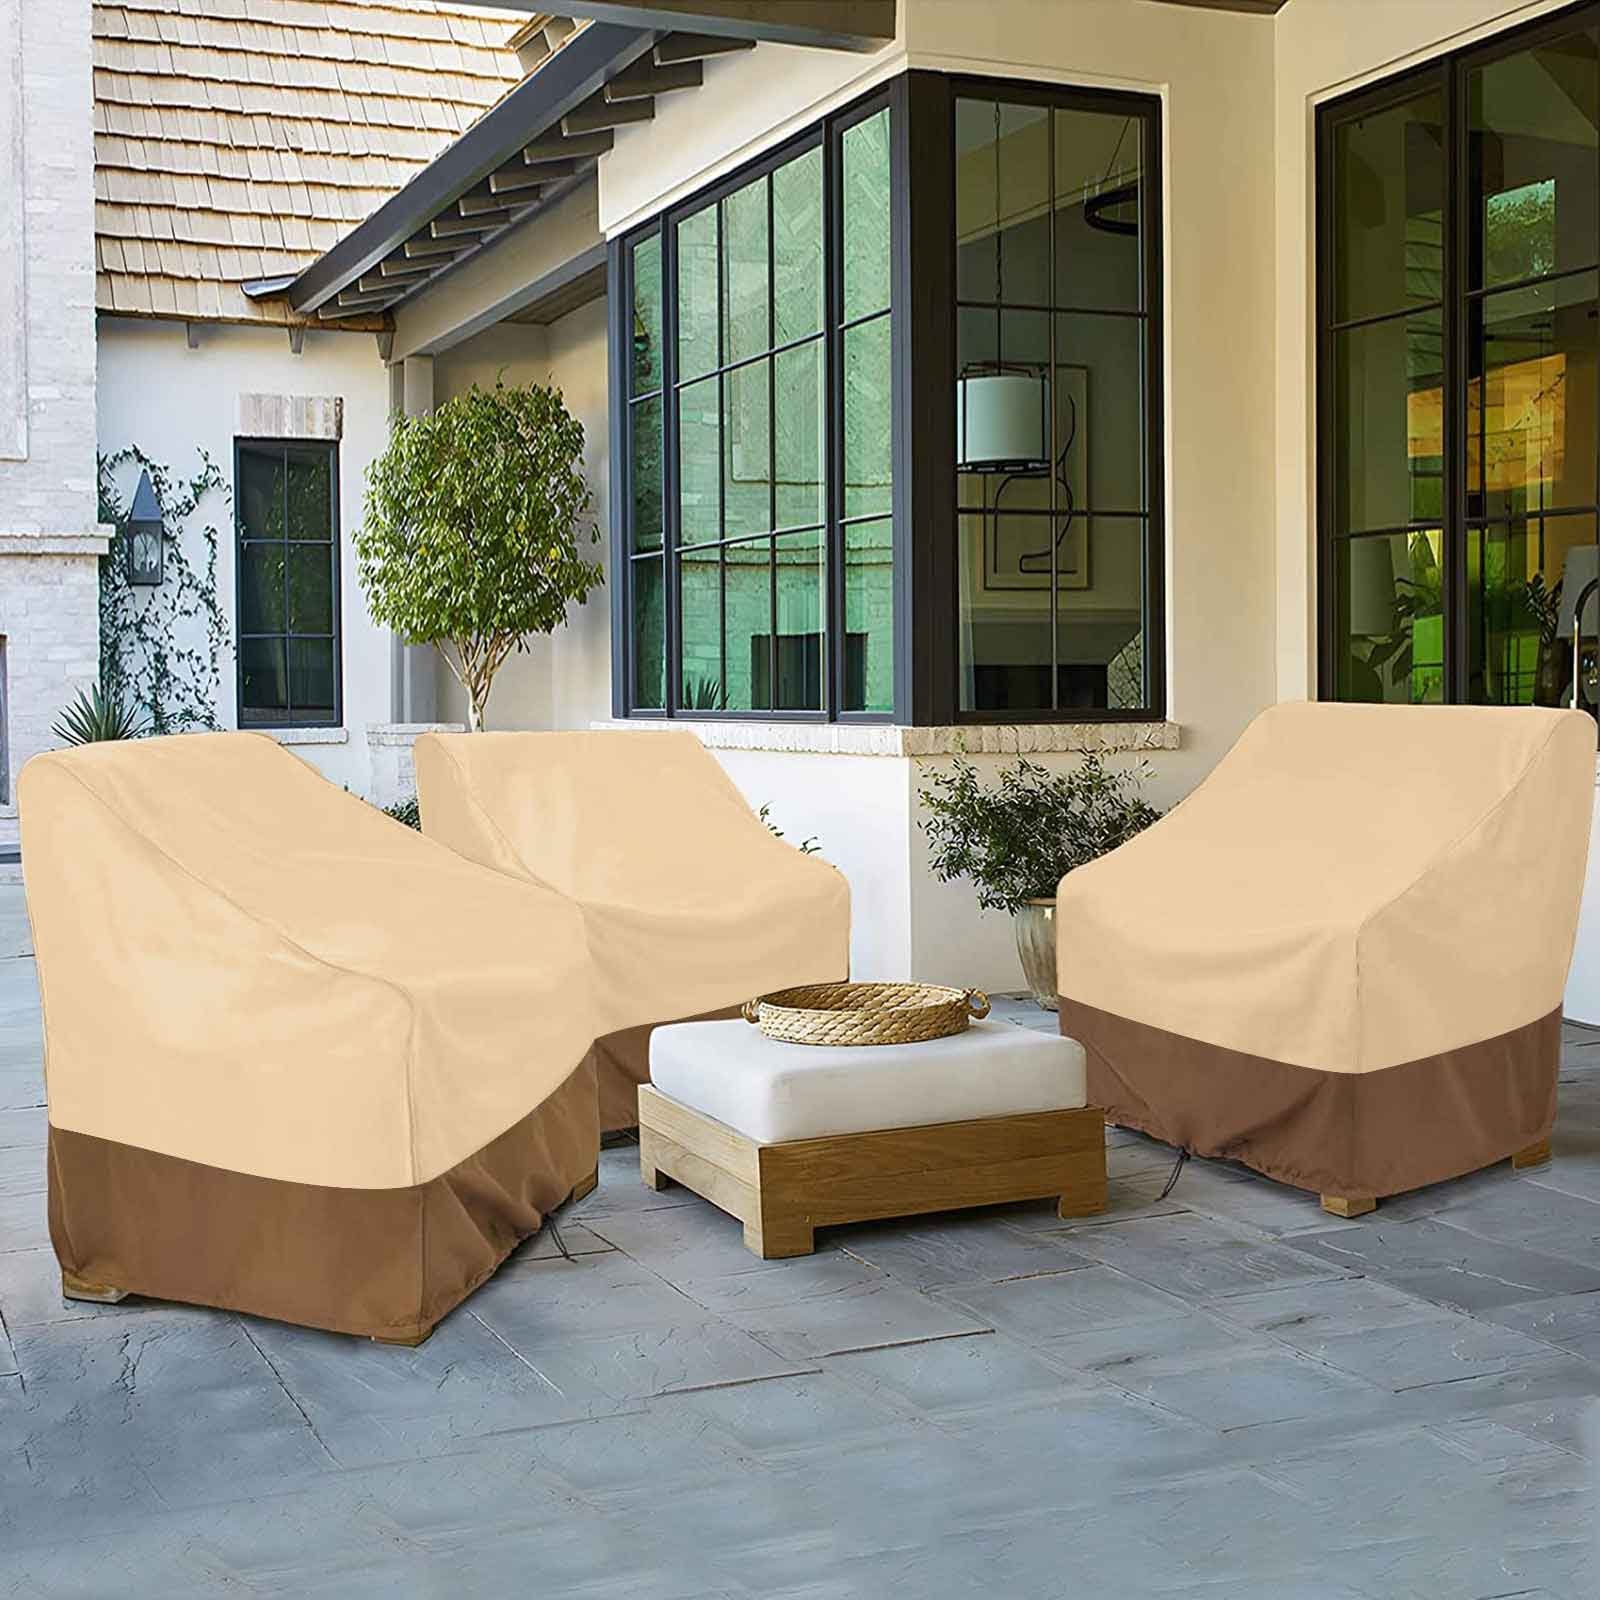 für Outdoor-Stuhl Möbel Rasen Sunicol Beige, Abdeckung, Anti deckt Ultraviolet, Terrasse wasserdicht, Gartenmöbel-Schutzhülle